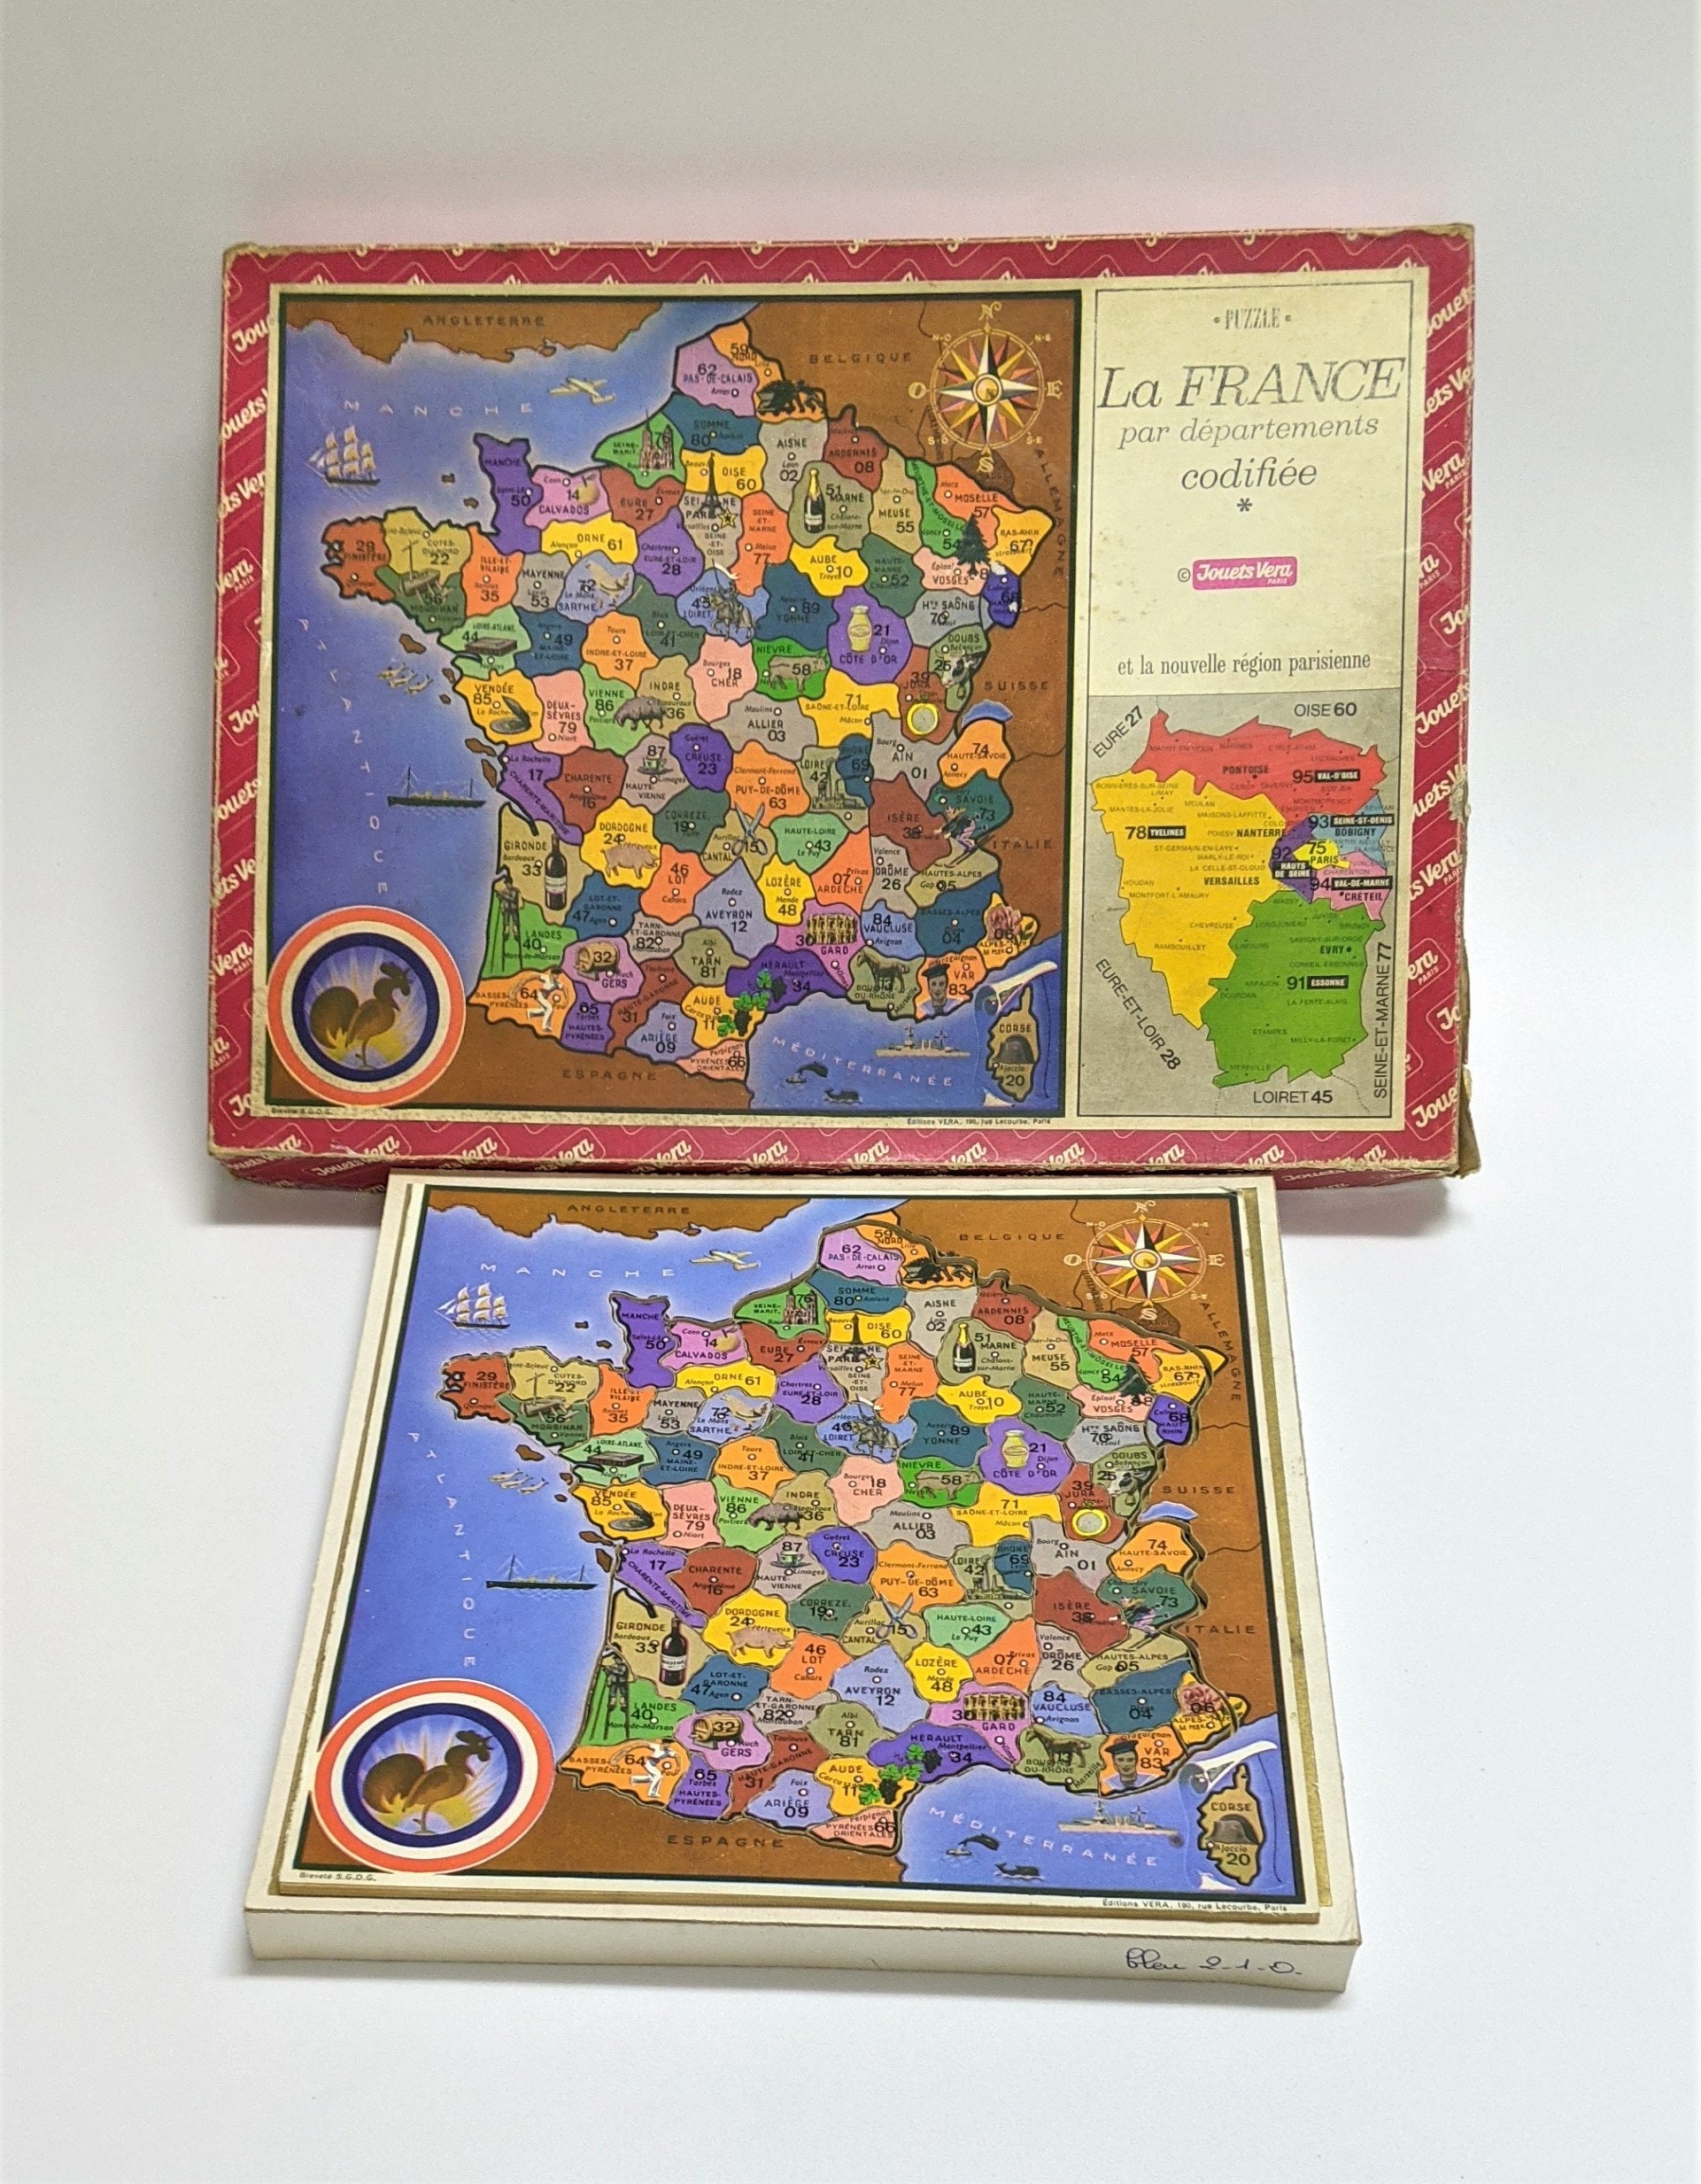 French Puzzle La France Par Departments Codifee Nouvelle Region Parisienne  Jouets Vera 1960s